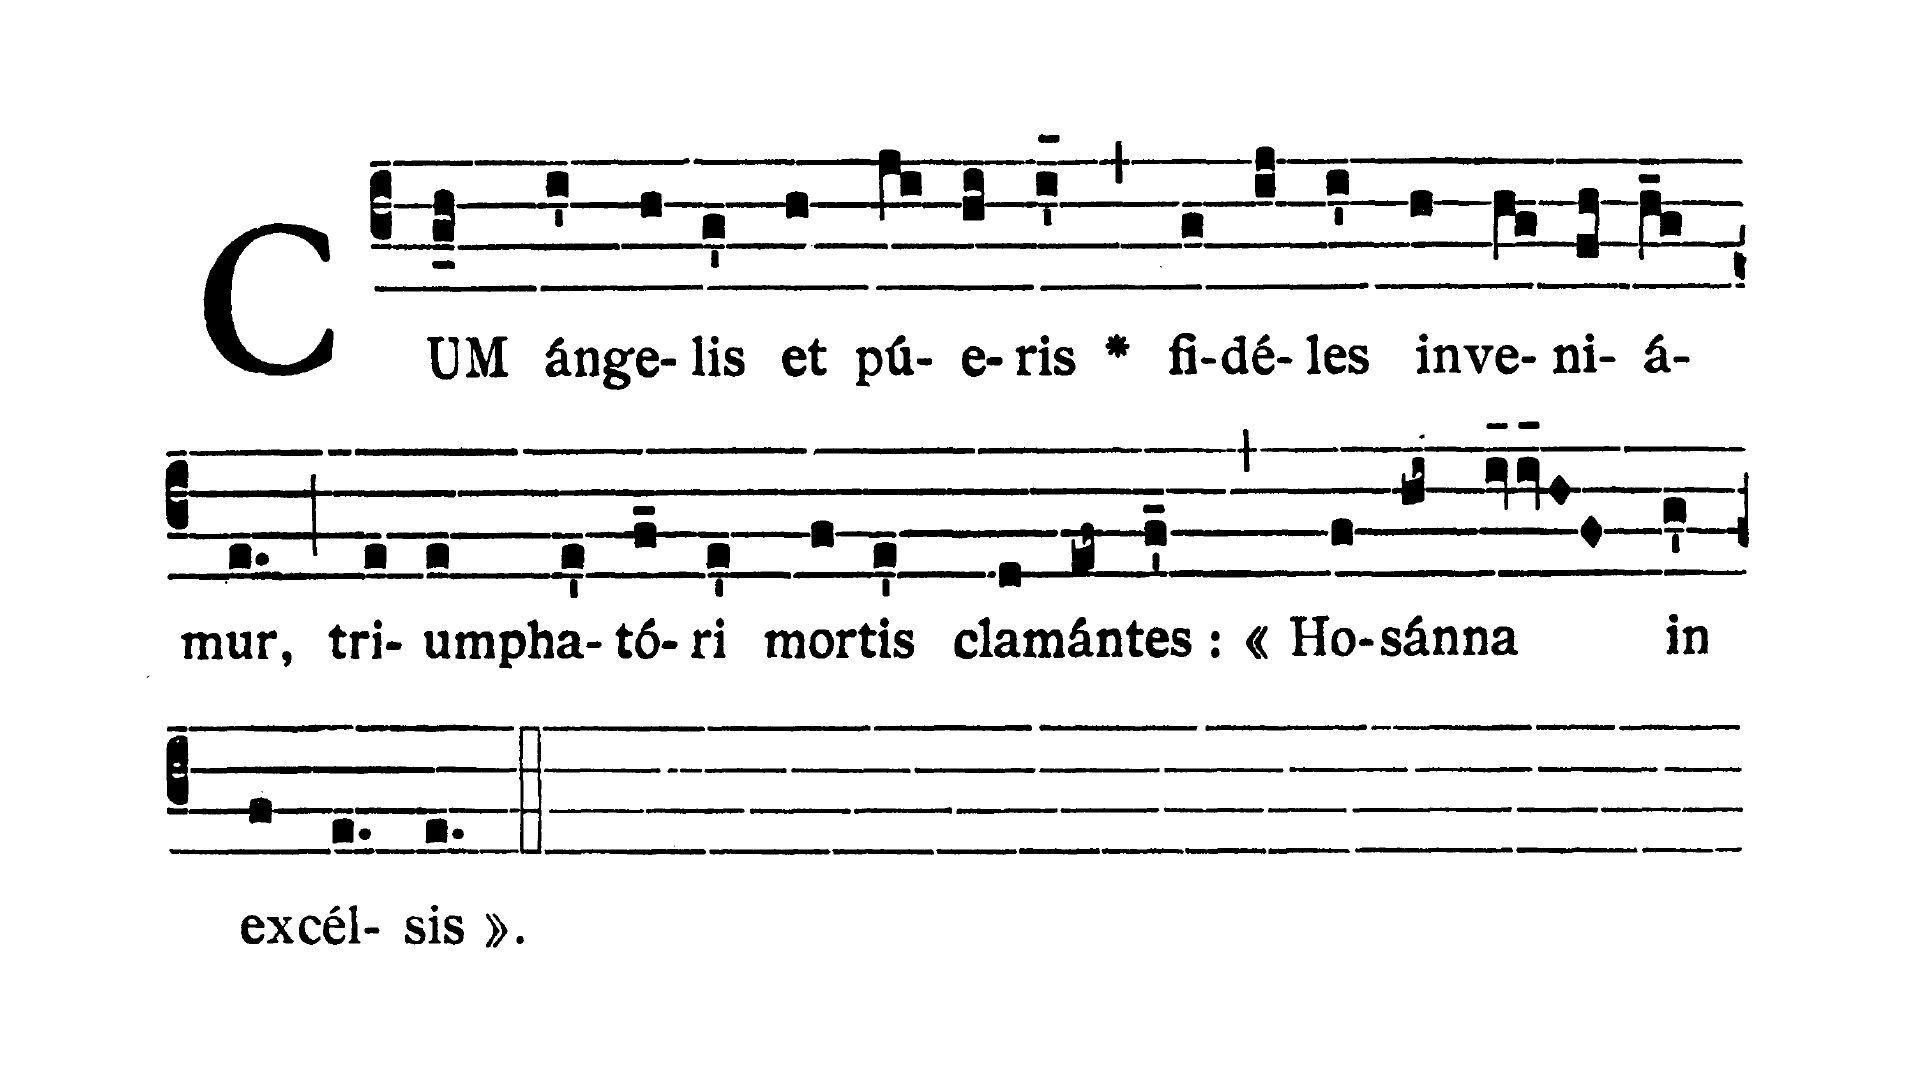 Dominica II in Passionis seu in Palmis - Antiphona (Cum angelis et pueris)